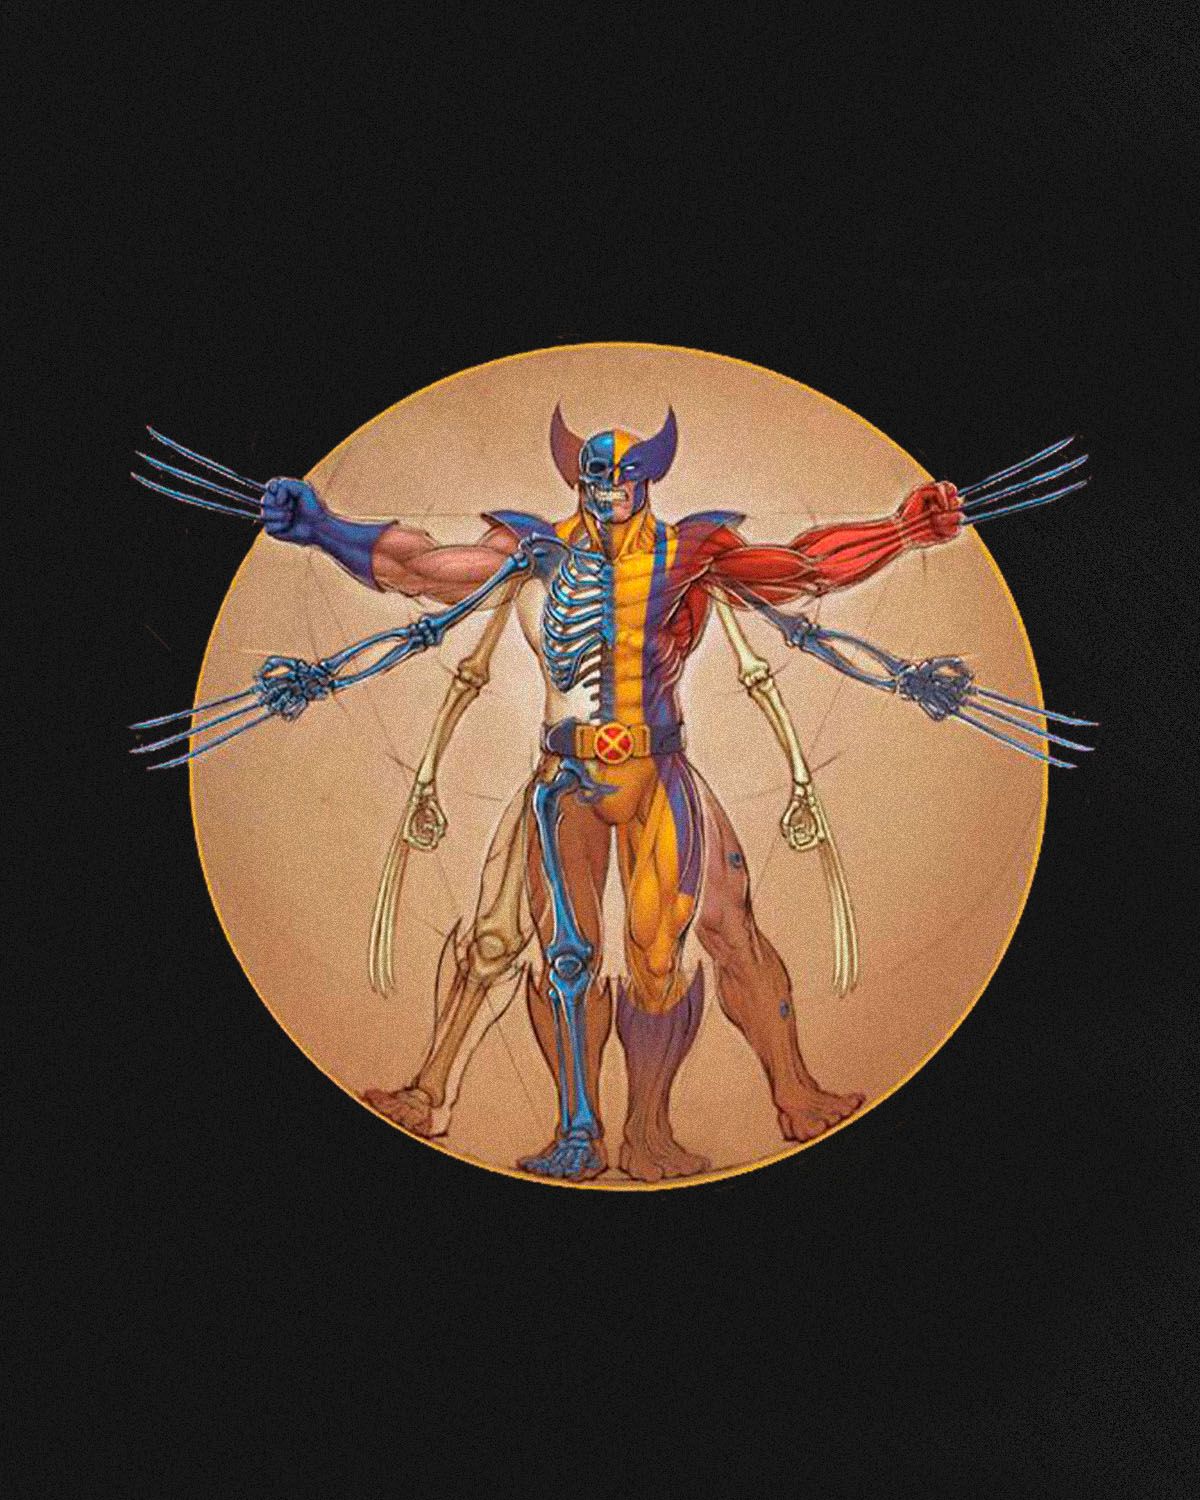 Хотите узнать больше об анатомии супергероев Marvel? Эта книга вам поможет